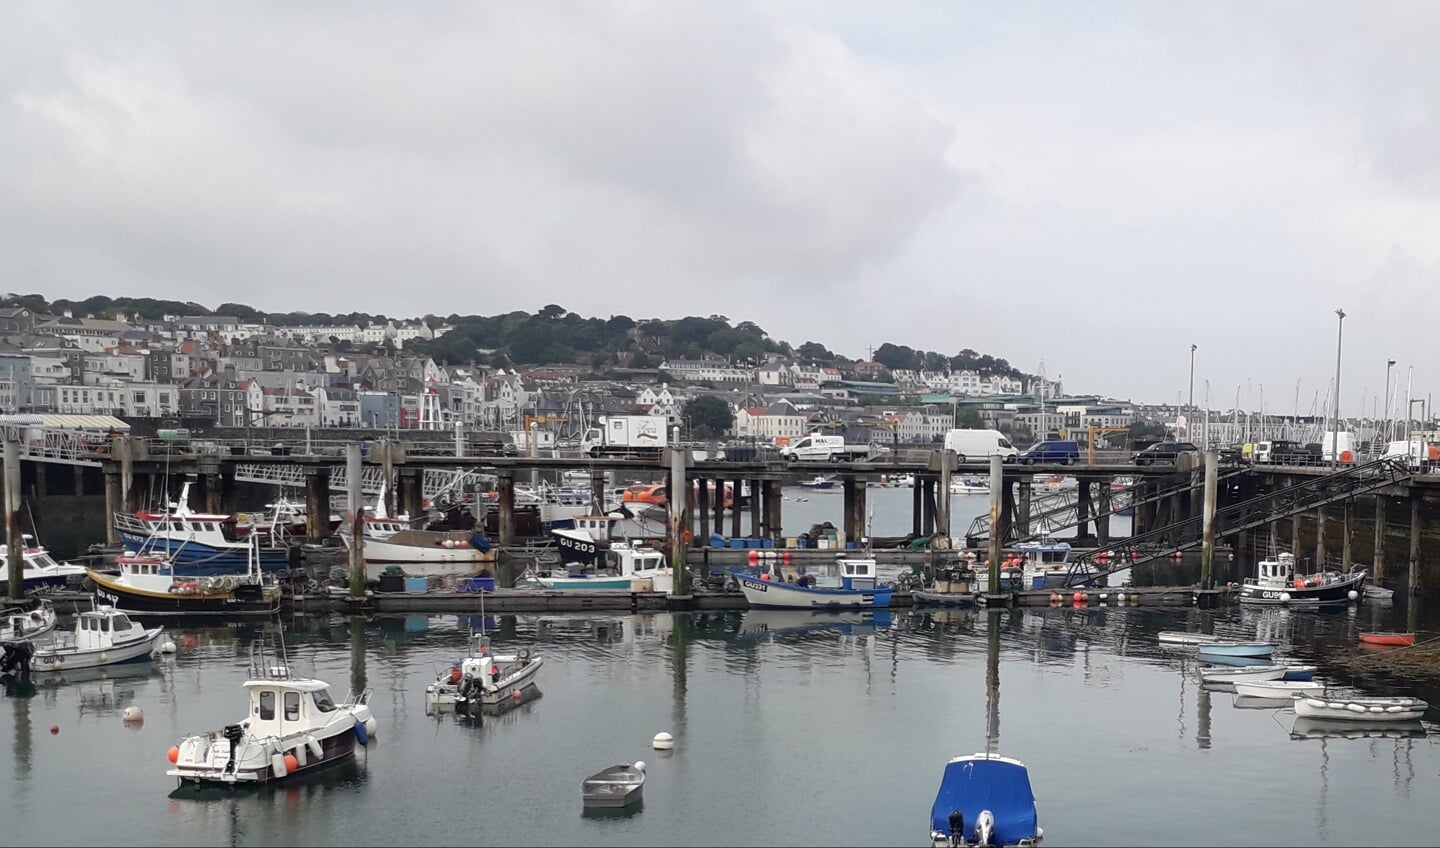 H Kanaaleilanden, haven hoofdstad St. Peter Port (Guernsey).